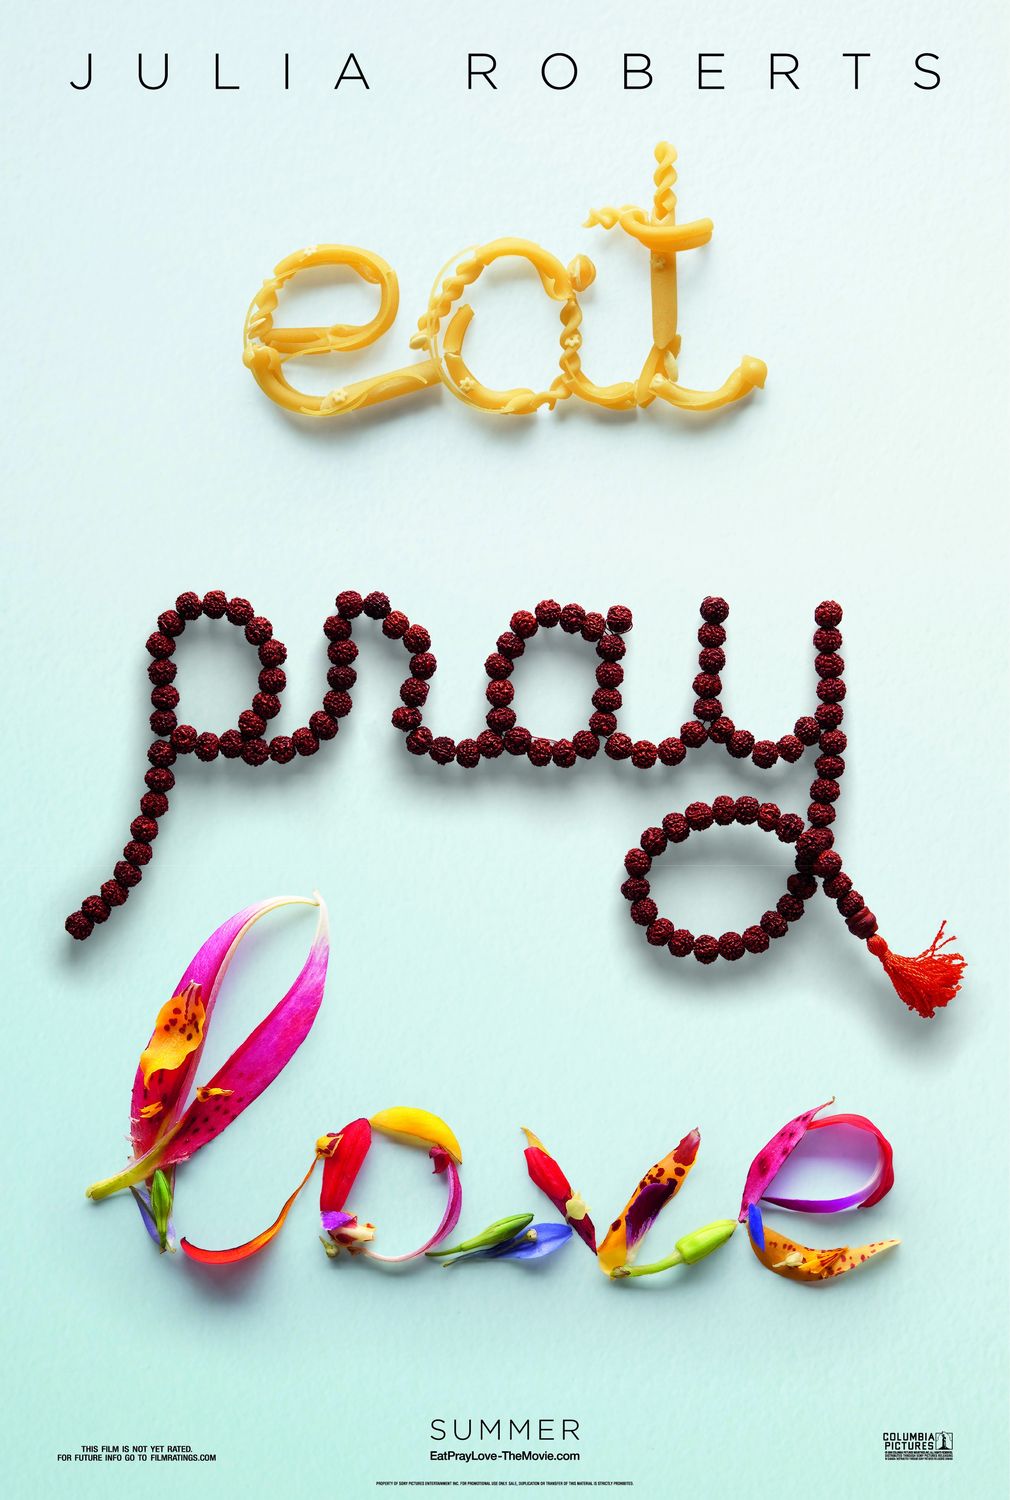 EAT.PRAY.LOVE